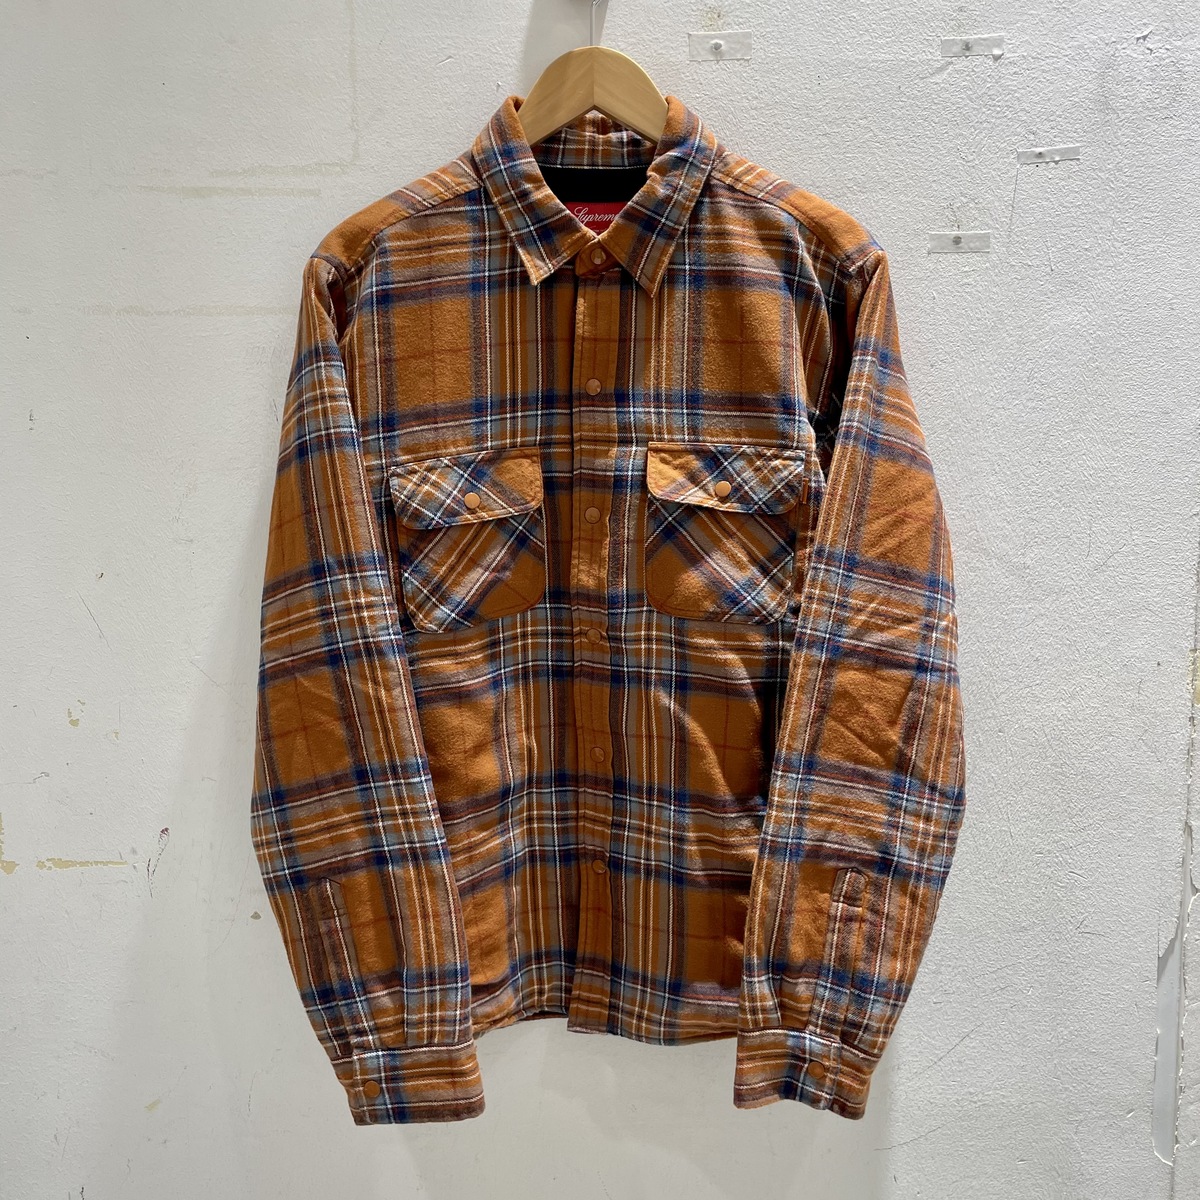 シュプリームの2018秋冬 Pile Lined Plaid Flannel Shirtsの買取実績です。